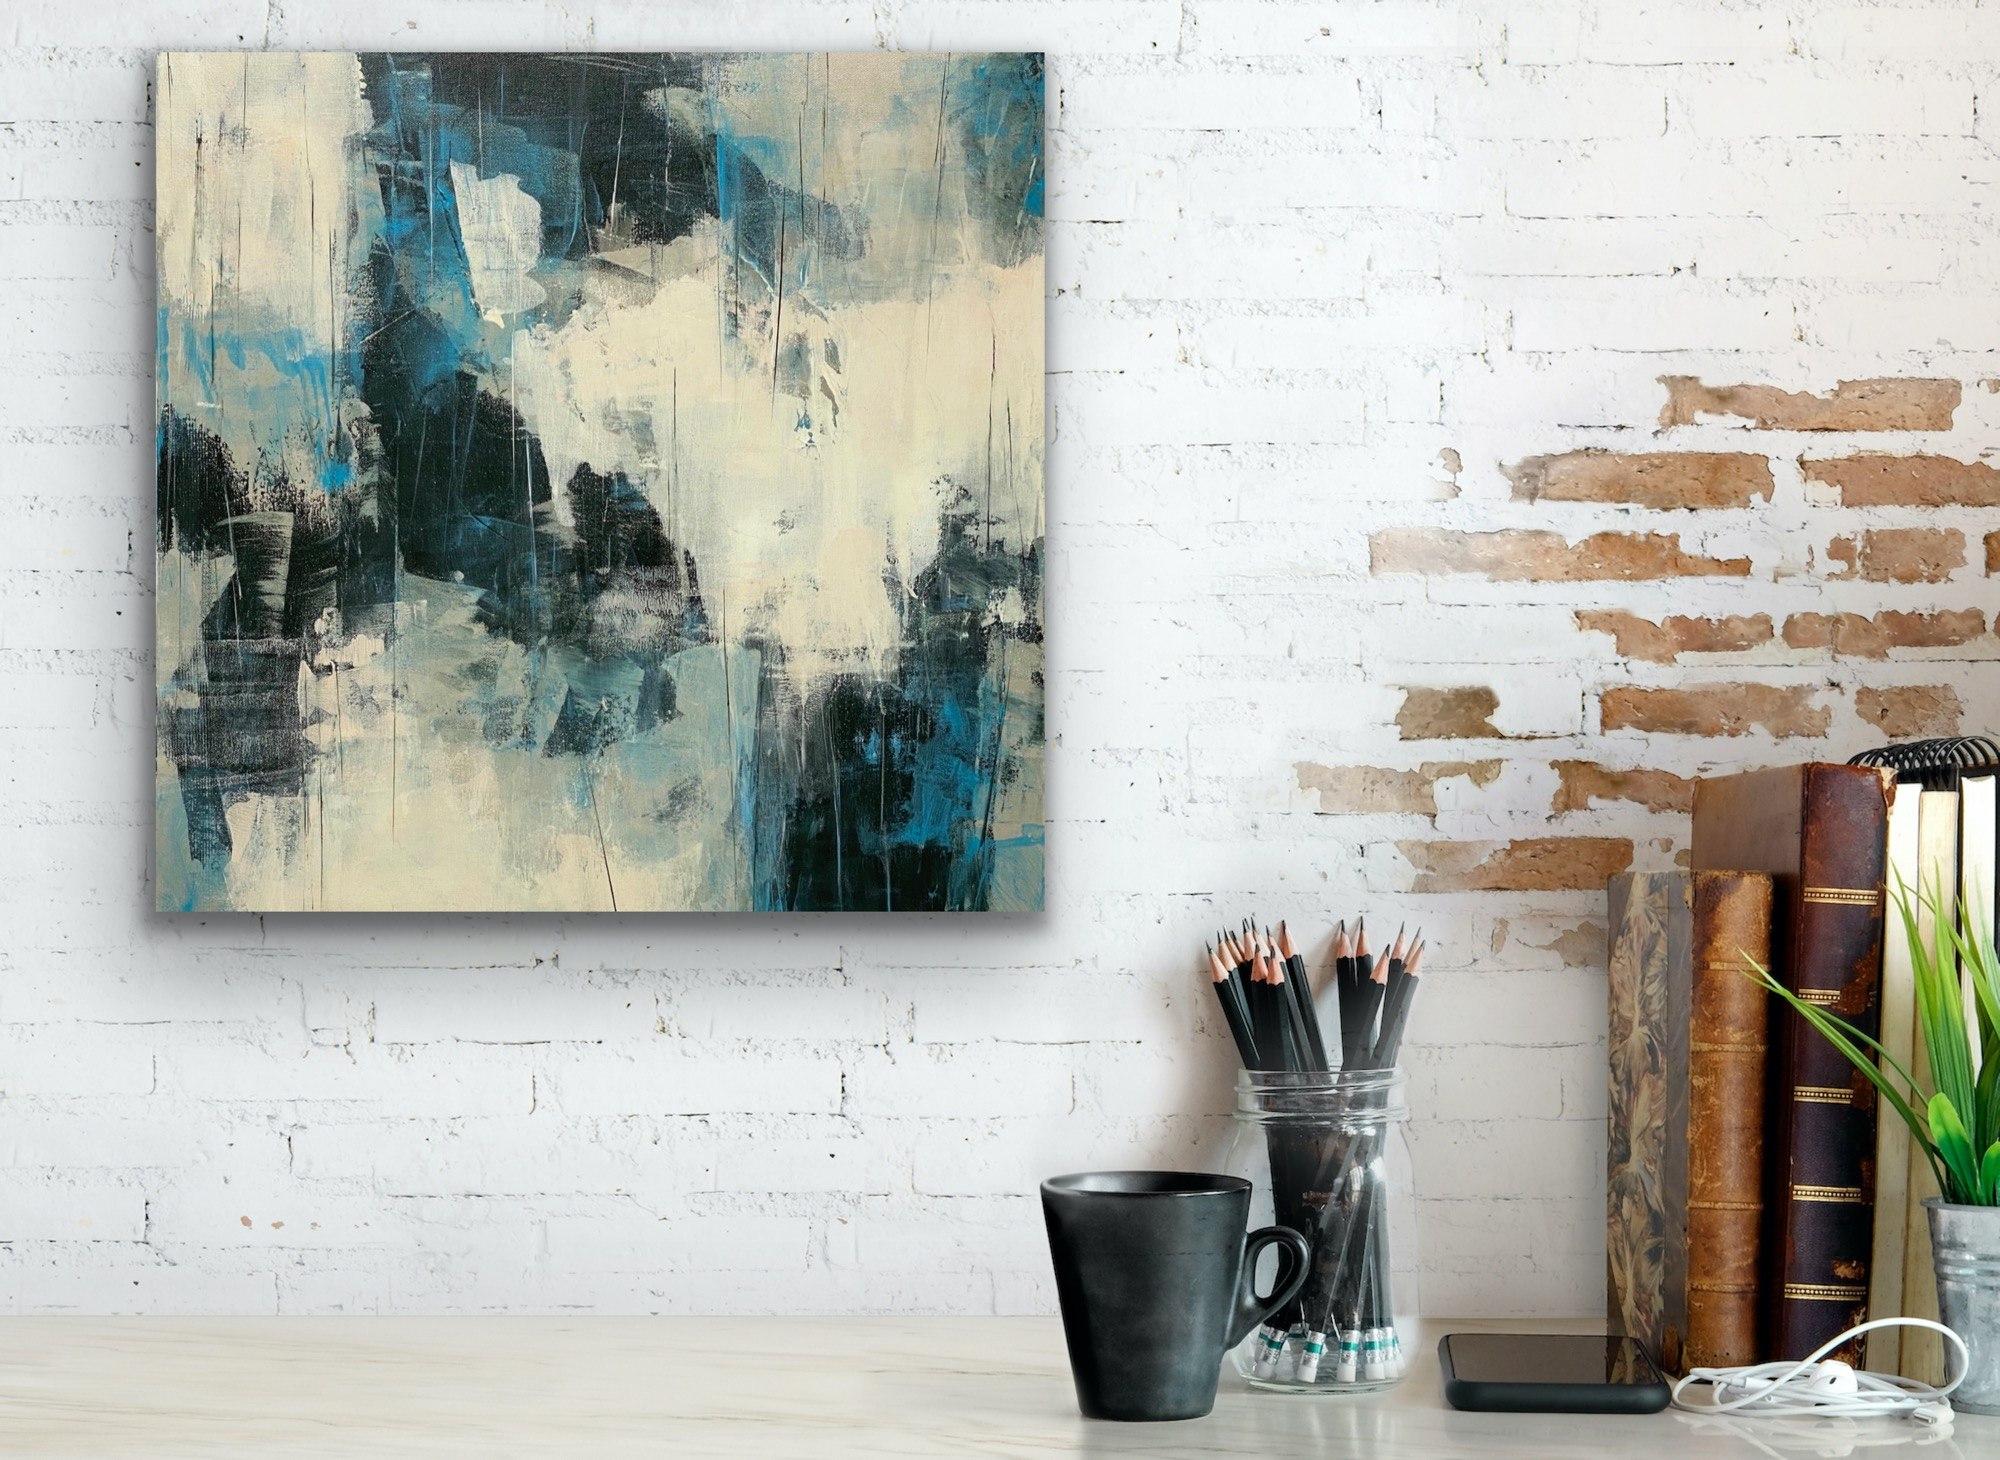 Cutting Edge, blau, schwarz, weiß, grau, abstrakter Expressionismus (Grau), Abstract Painting, von Juanita Bellavance 